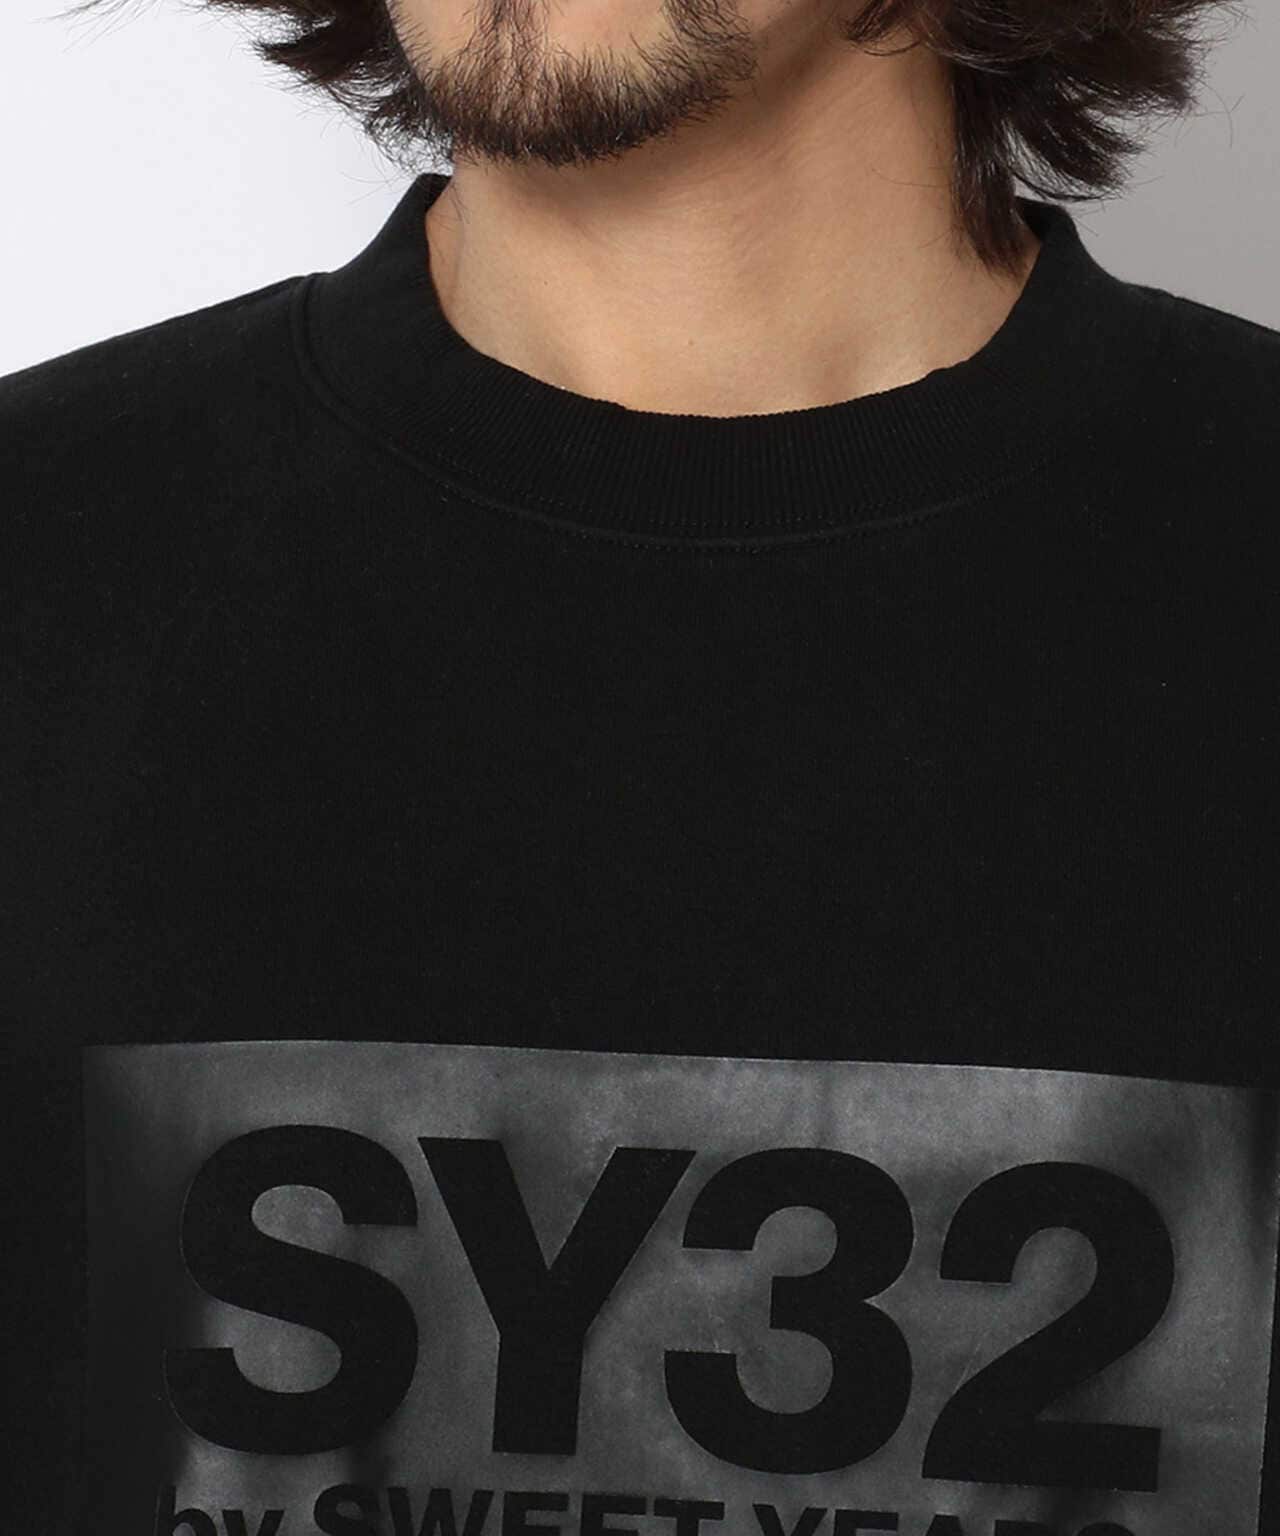 【レア】SY32 bySWEET YEARS スウェットプルオーバーシャツ M